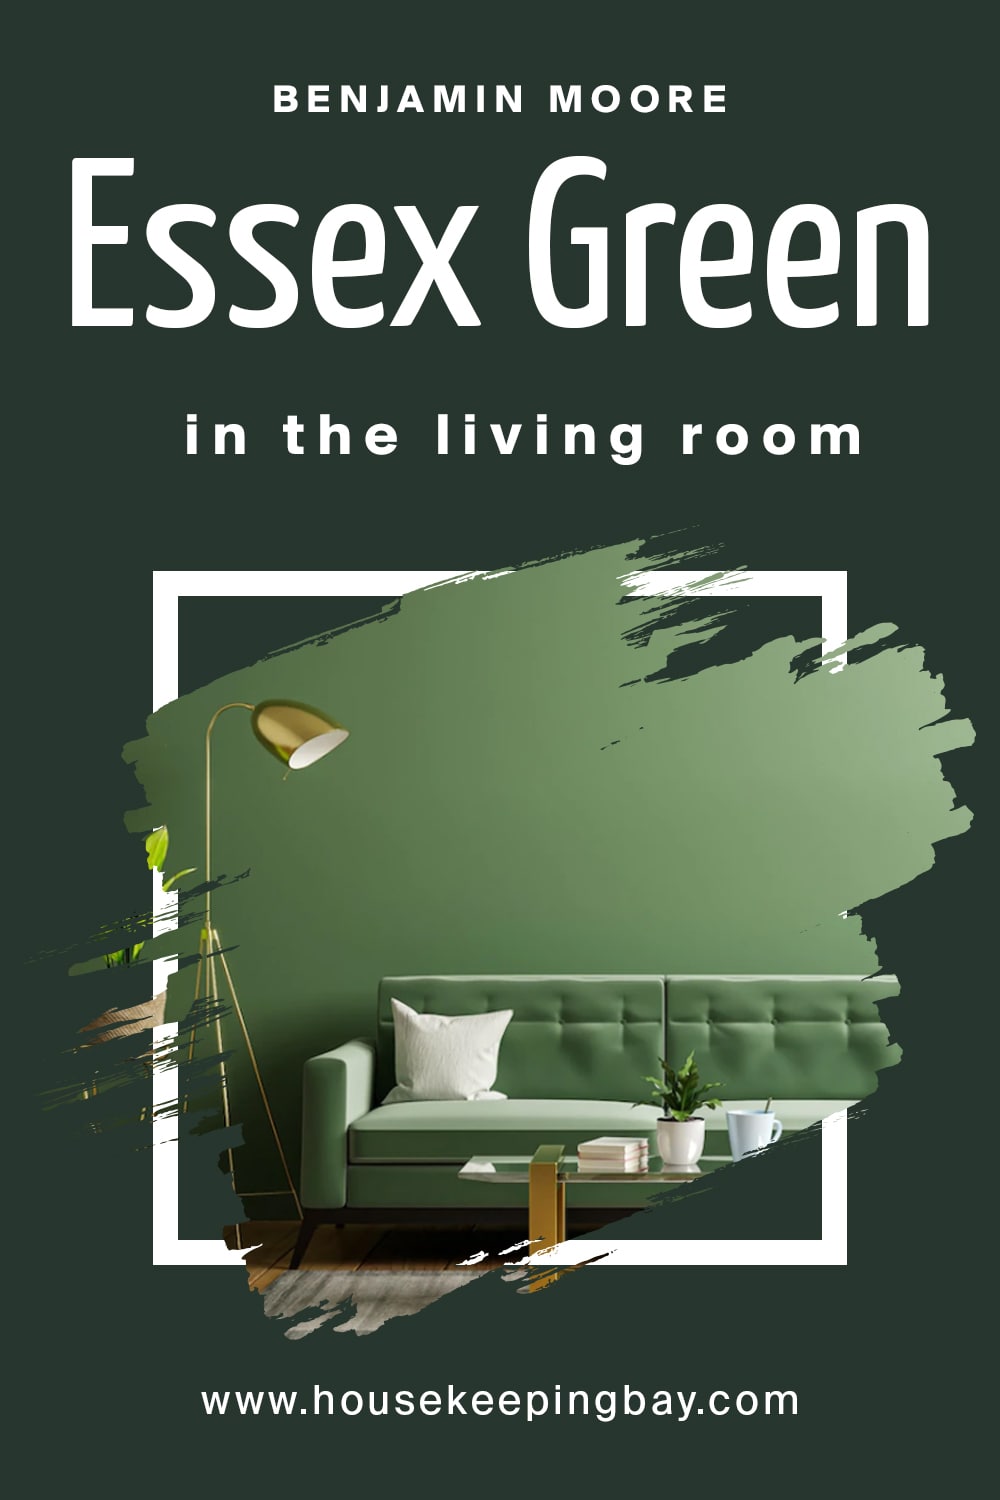 Benjamin Moore. Essex Green in the living Room